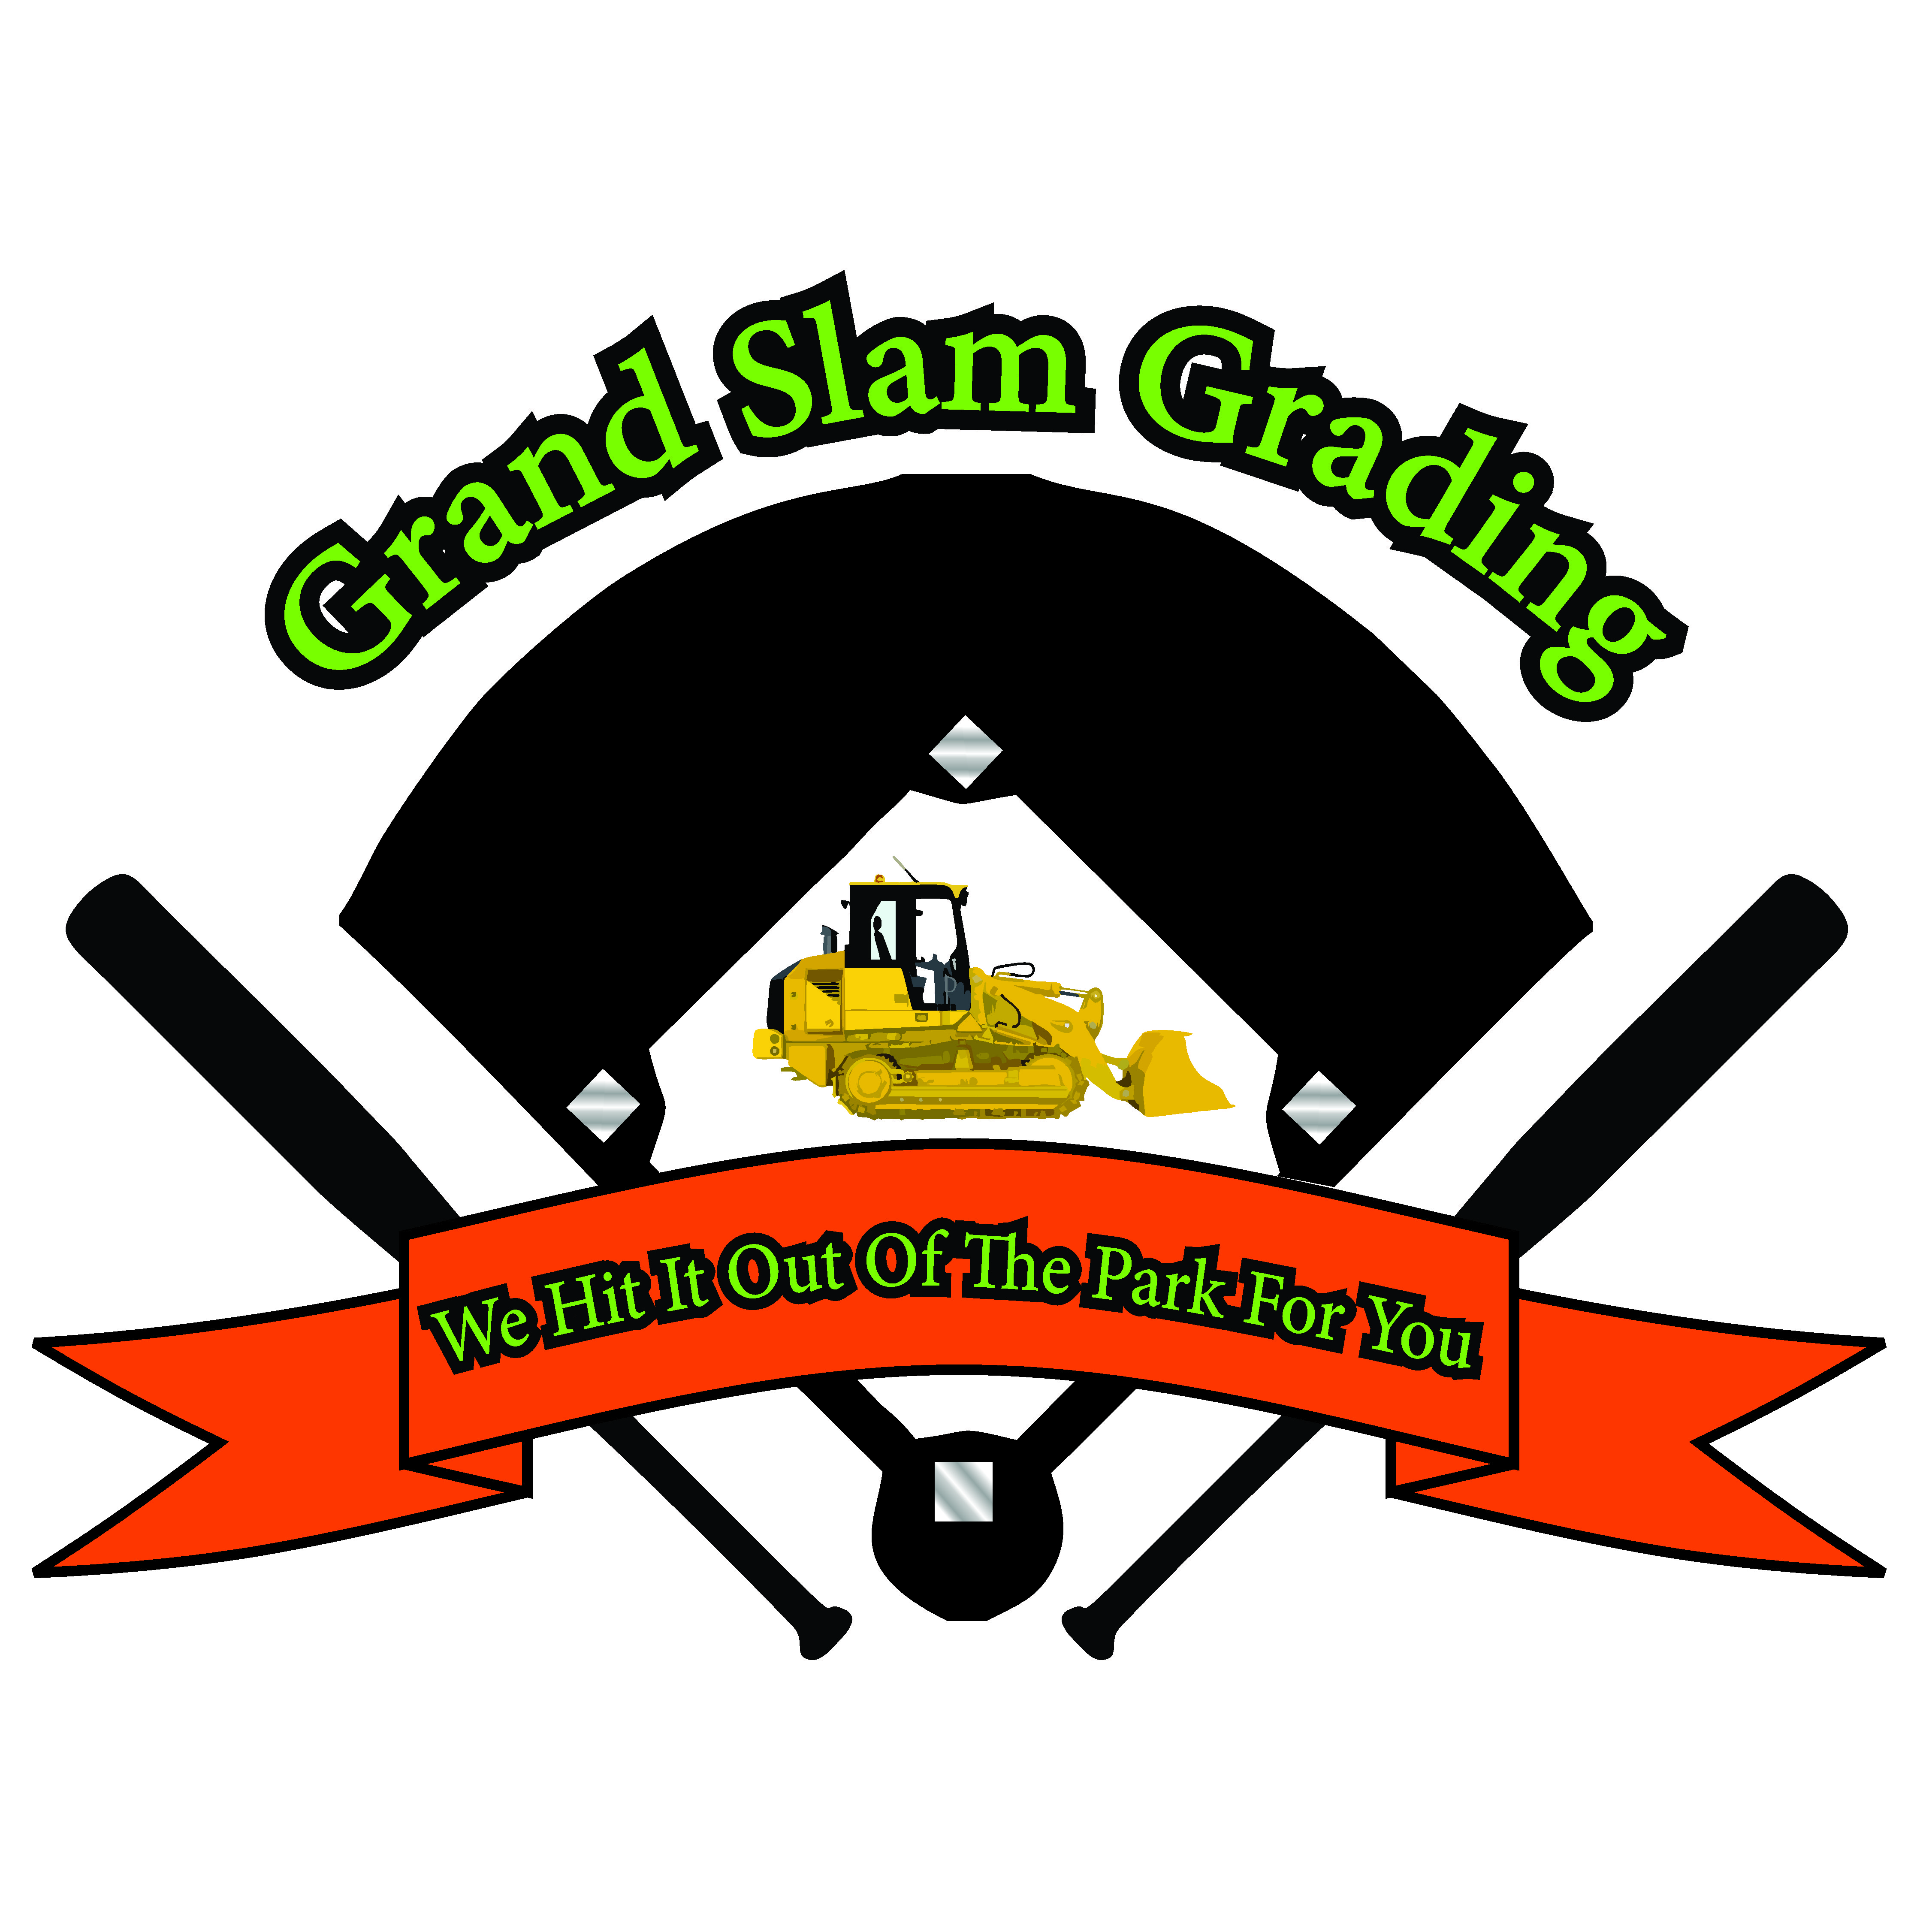 Grand Slam Grading Logo